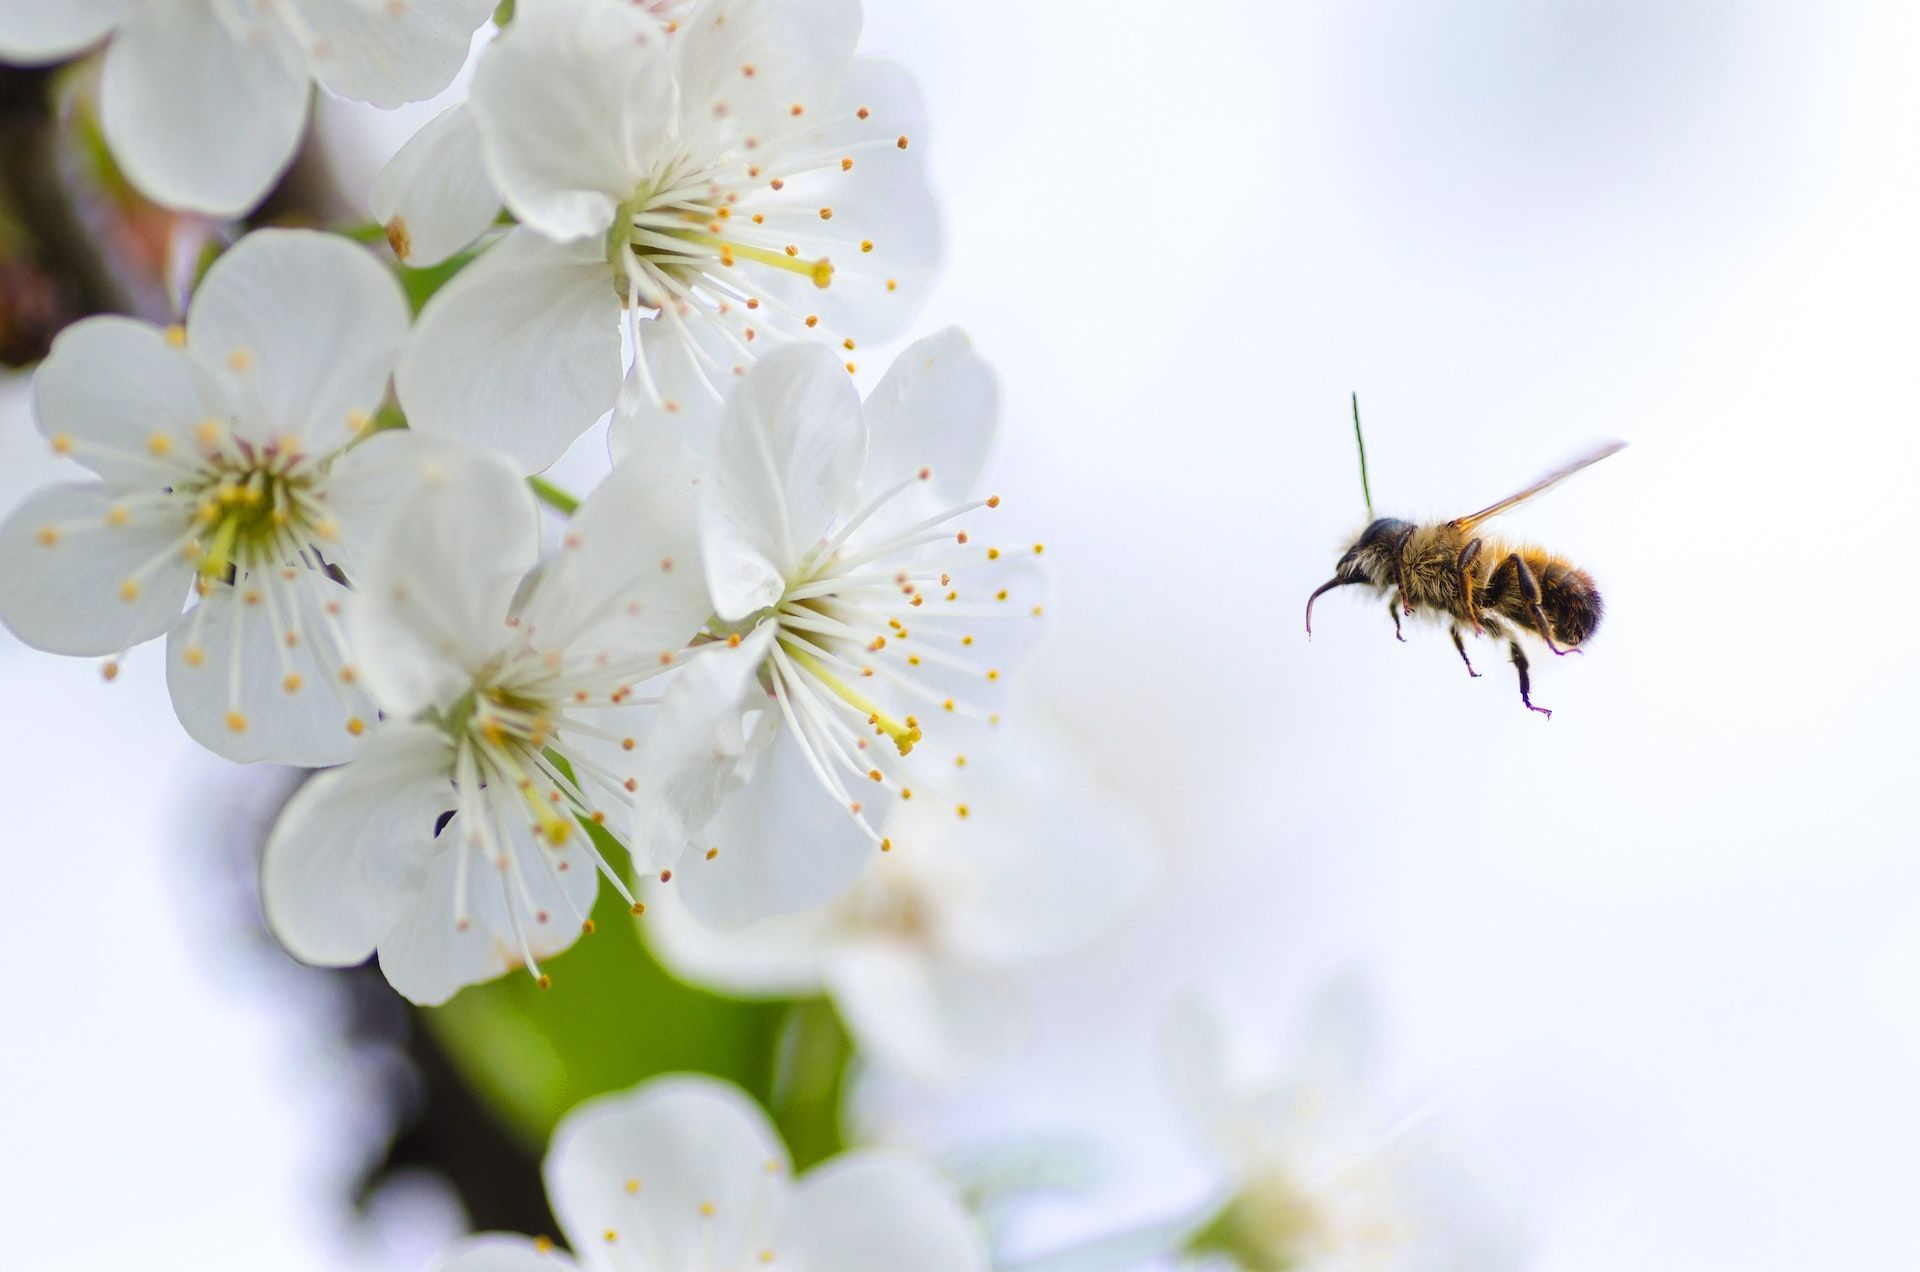 12 квітня вже з вуликів почали вилітати бджоли — прийшла весна і вона буде теплою / © Pexels